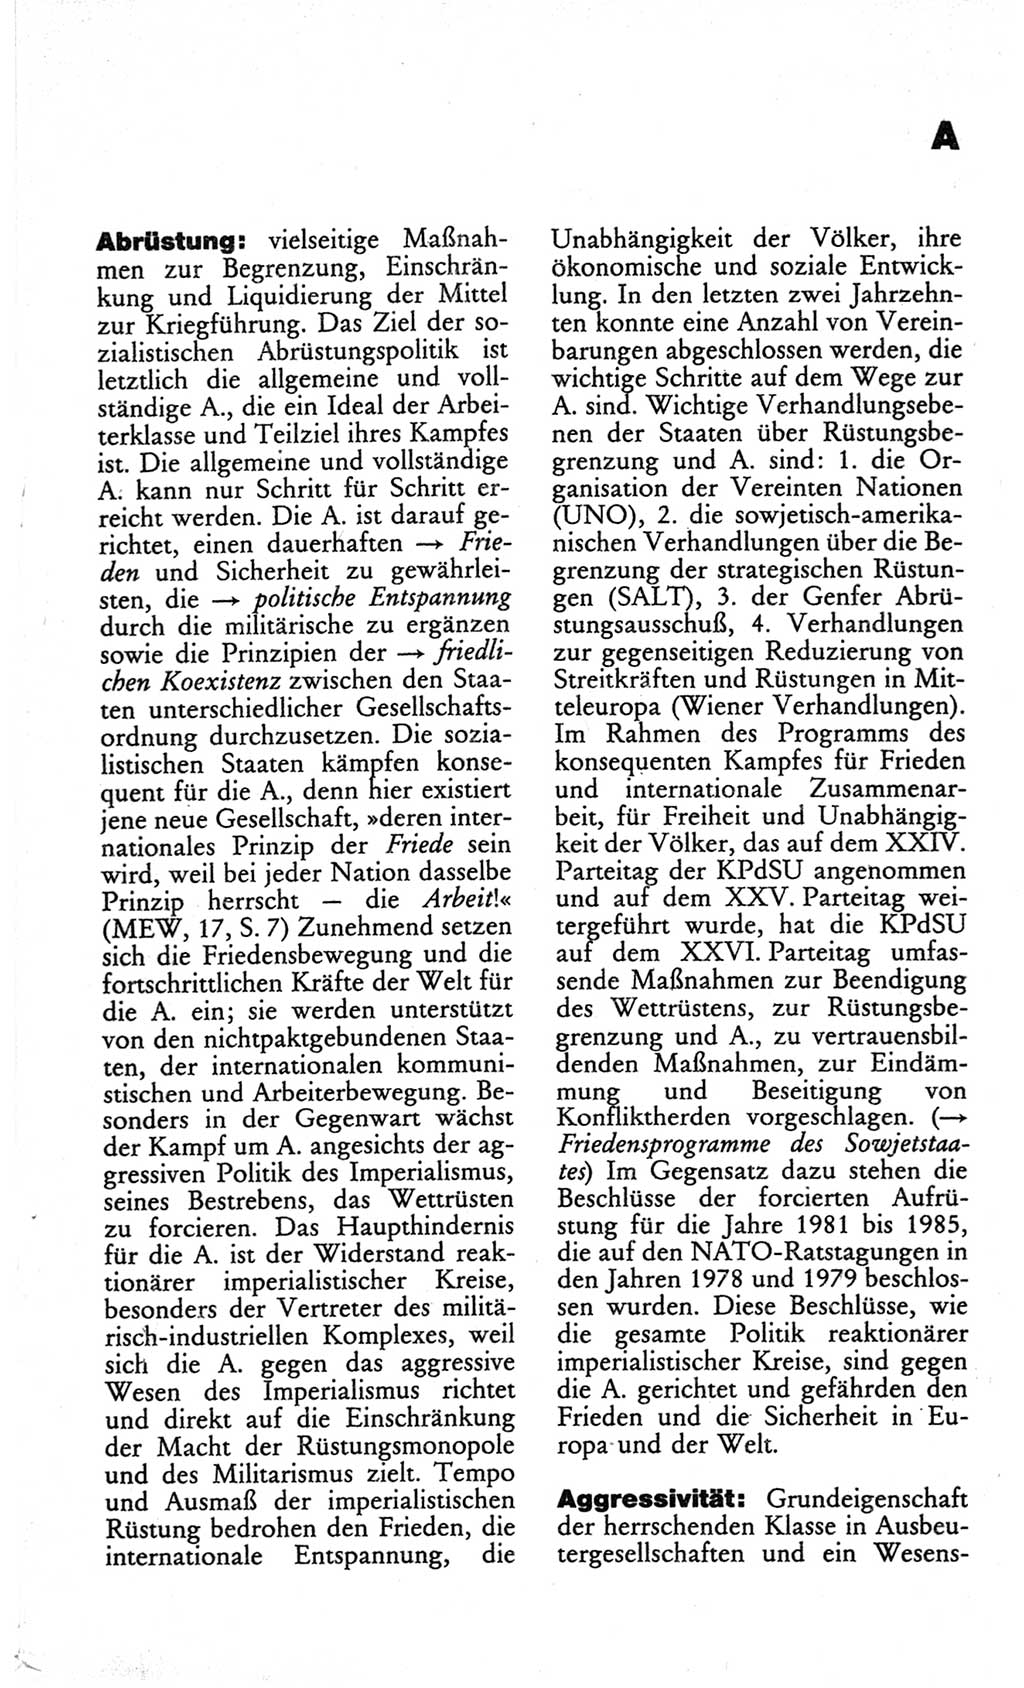 Wörterbuch des wissenschaftlichen Kommunismus [Deutsche Demokratische Republik (DDR)] 1982, Seite 9 (Wb. wiss. Komm. DDR 1982, S. 9)